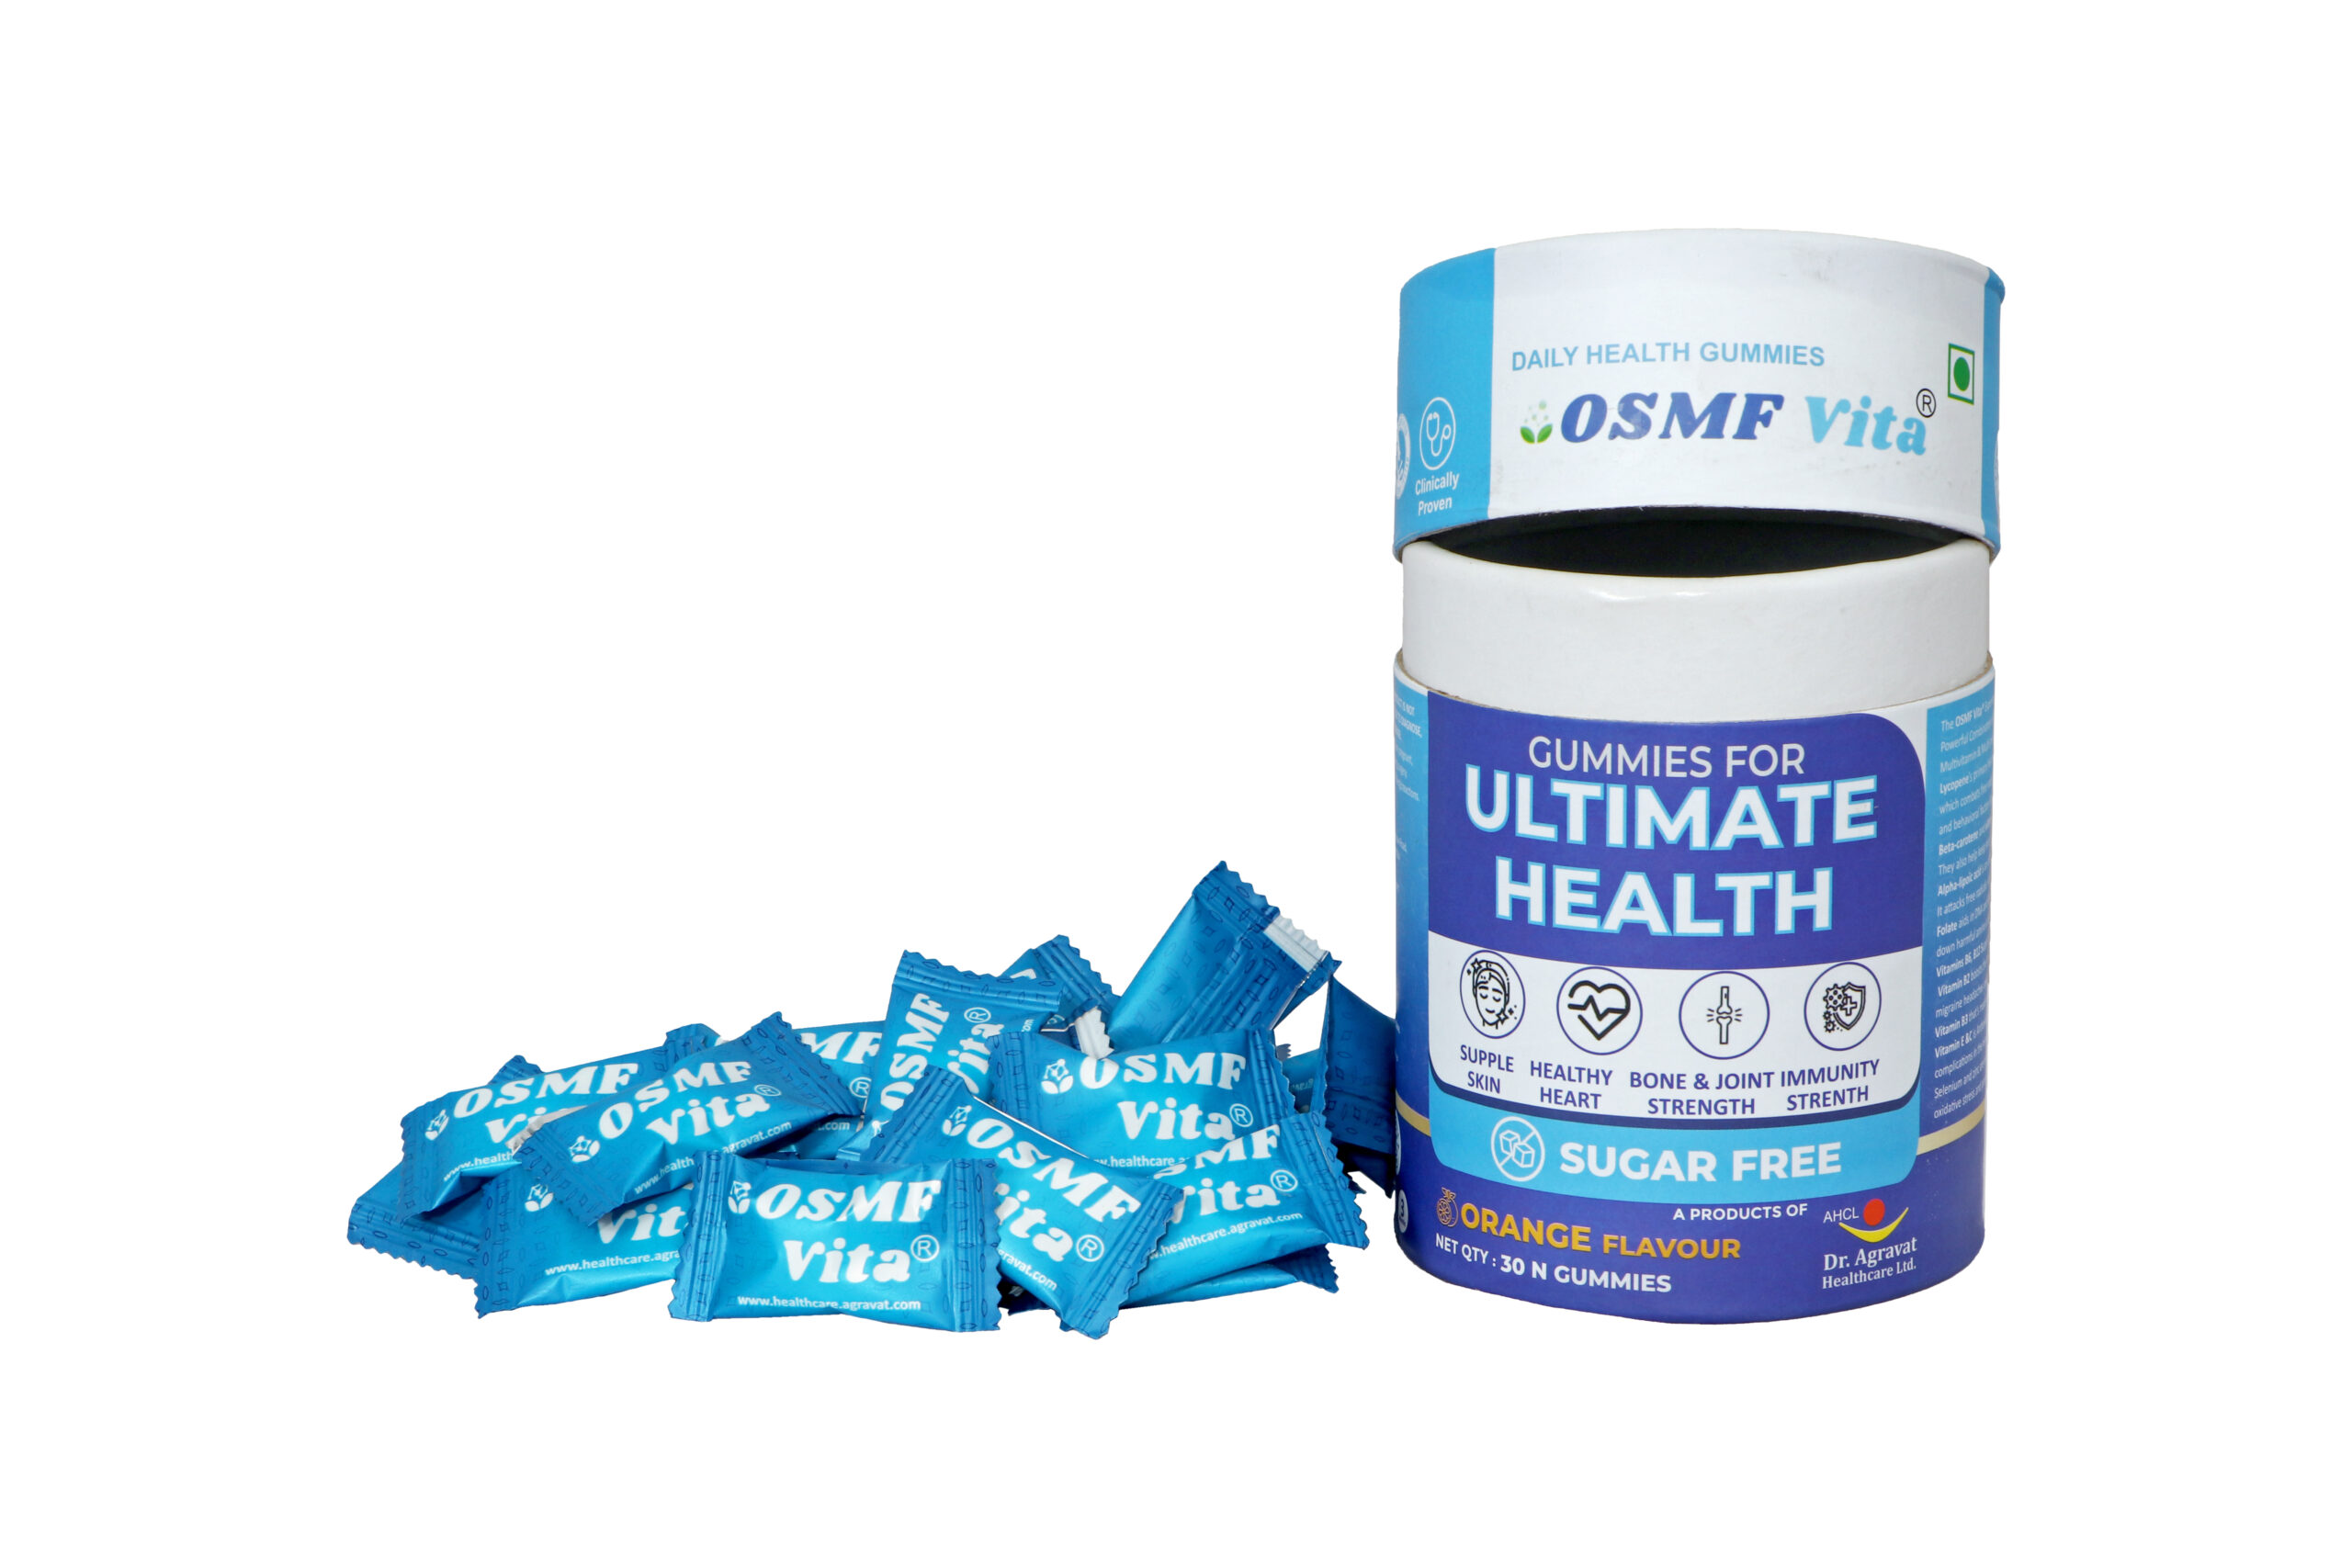 OSMF Vita Gummies For Ultimate Health Lycopene Antioxidant + Multivitamin Supplement Pillow pack